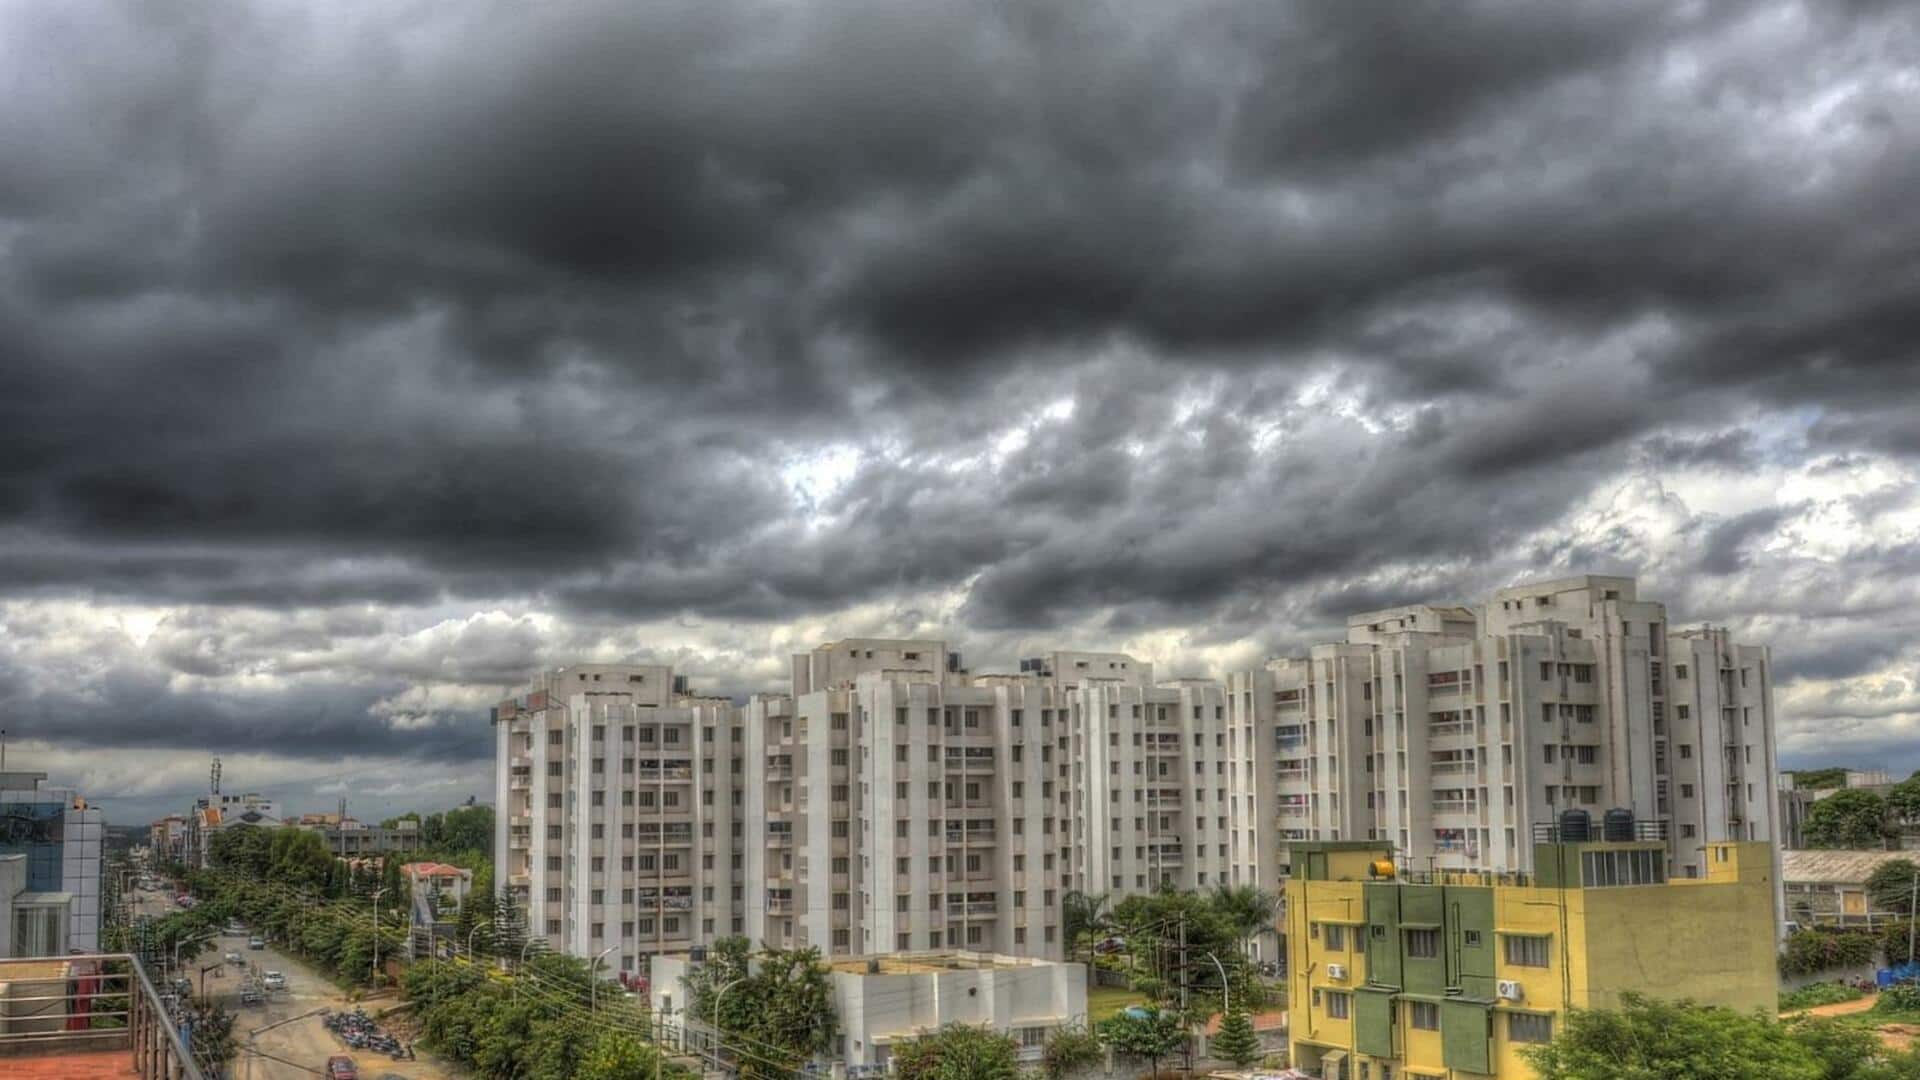 दिल्ली-NCR में बारिश की संभावना, हिमाचल प्रदेश में येलो अलर्ट जारी